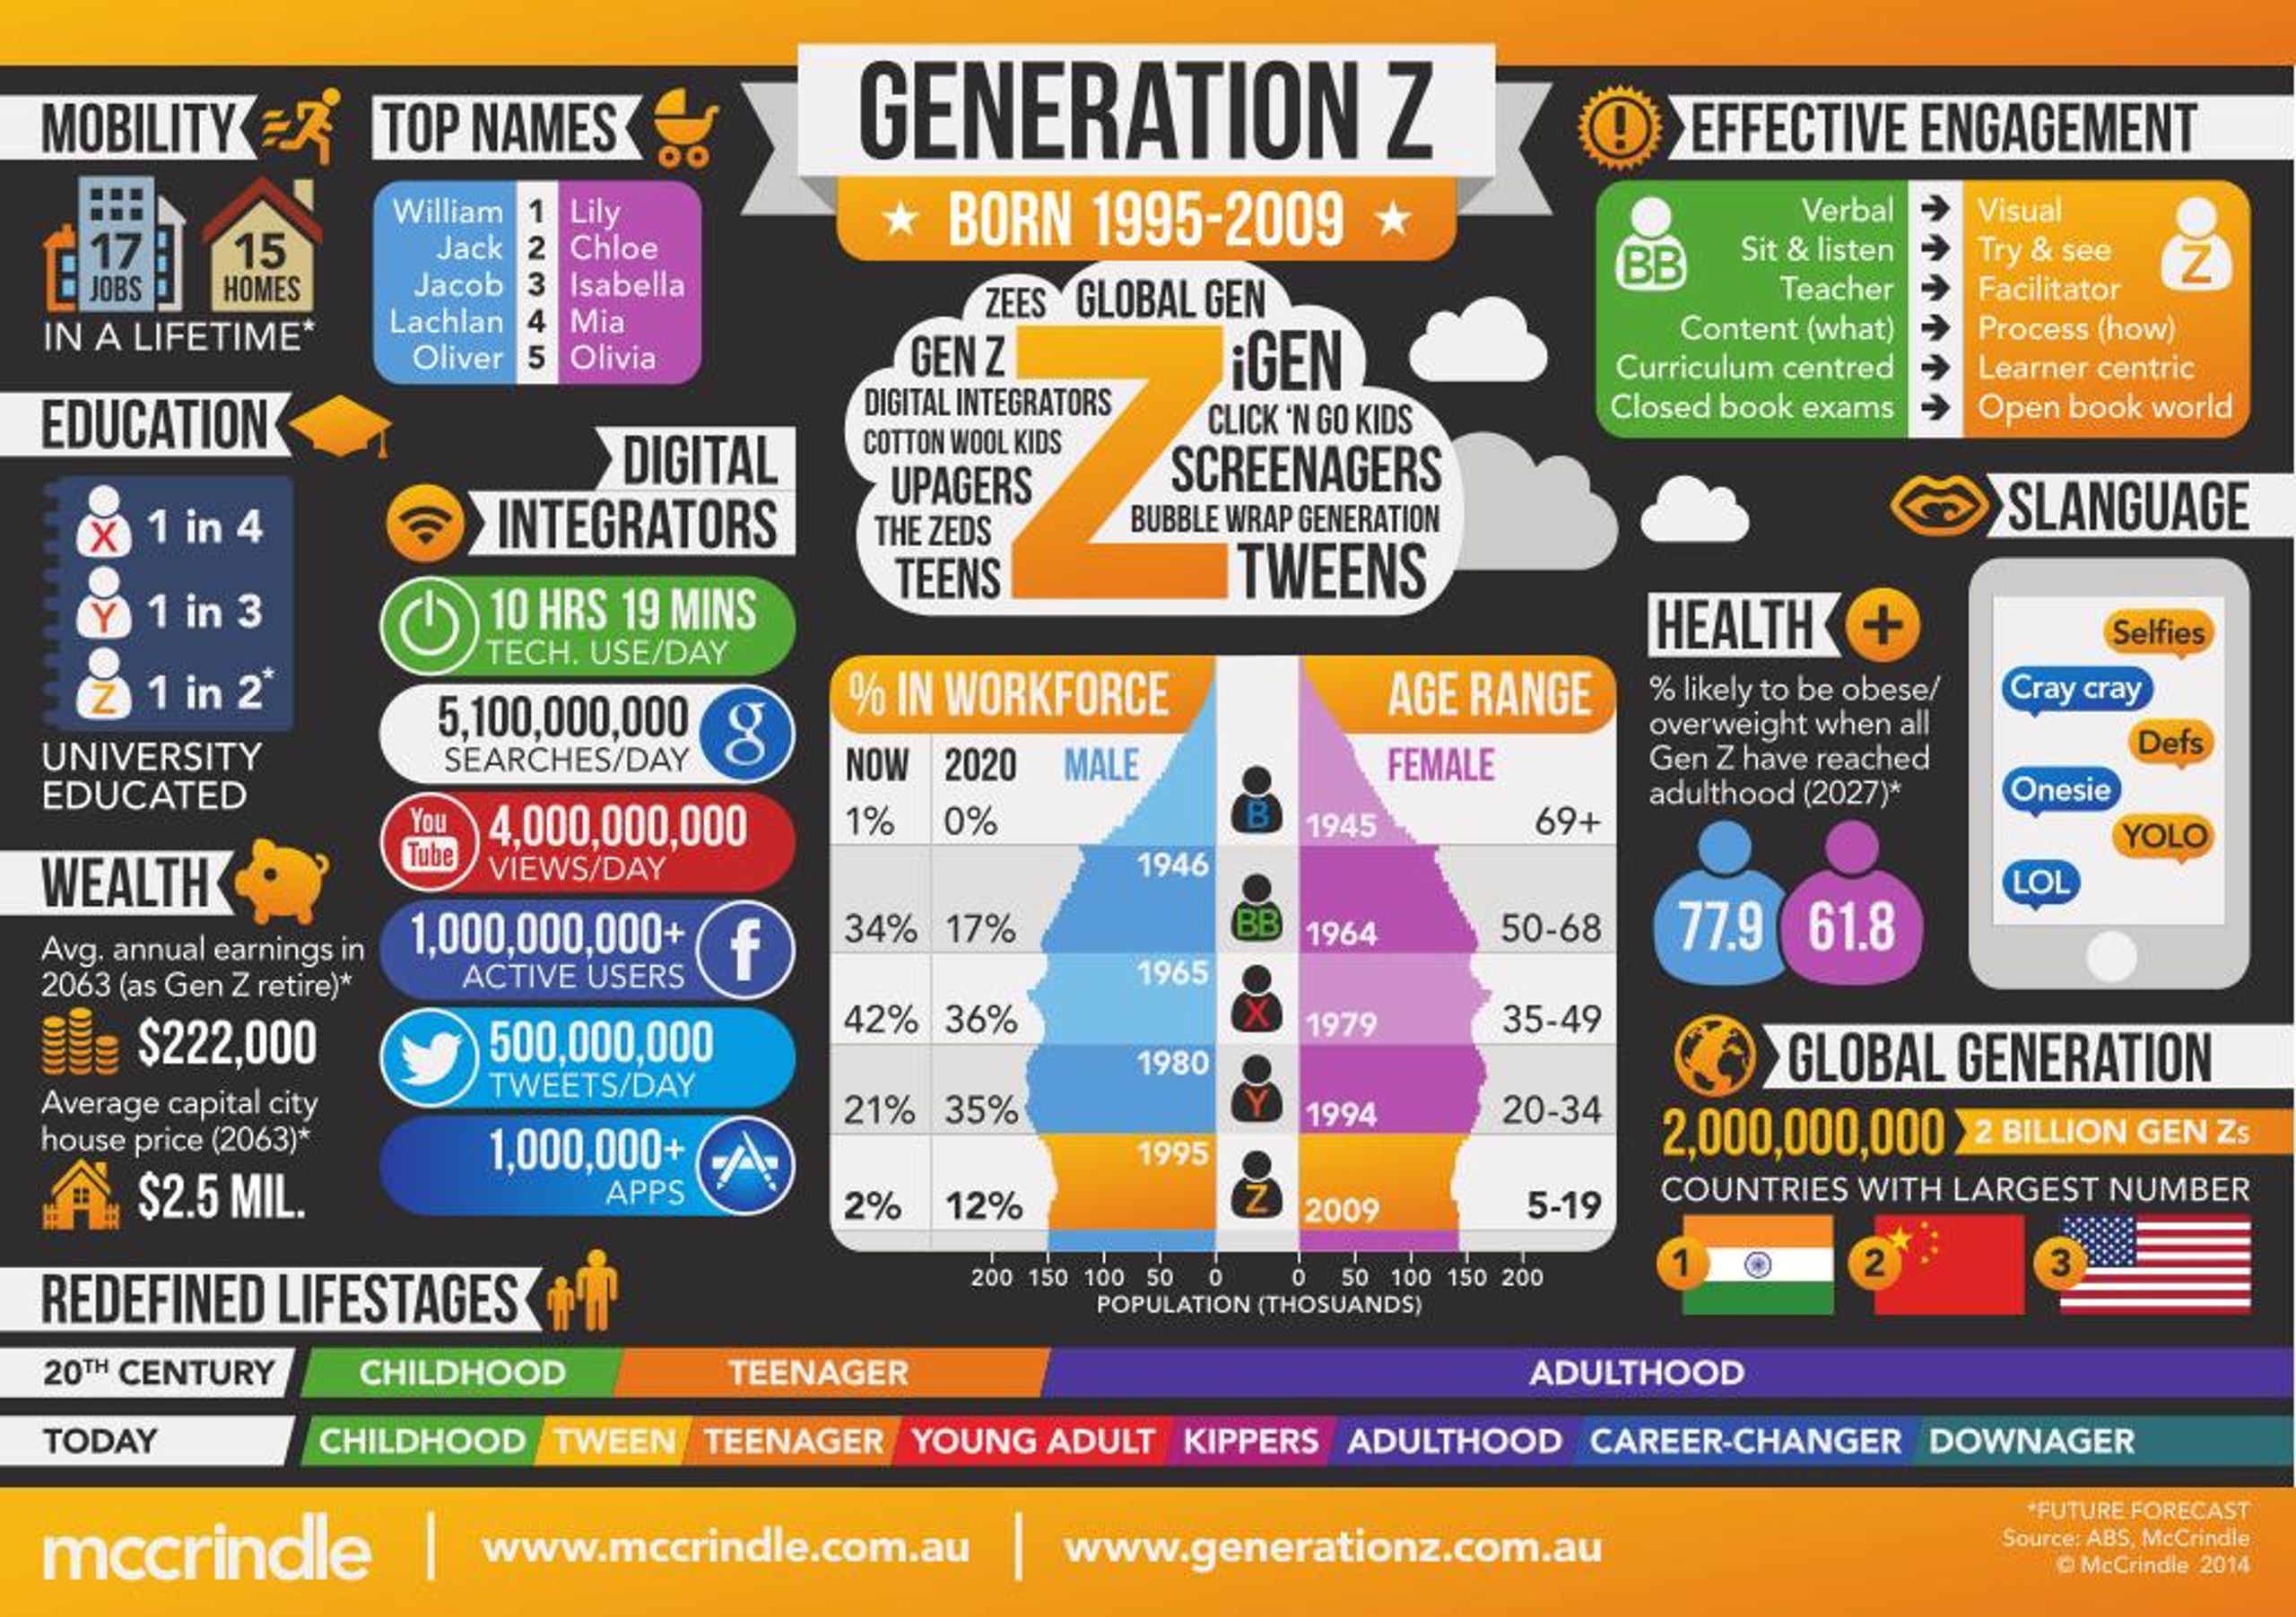 Gen Z, millennials grow their social media presence through 2027